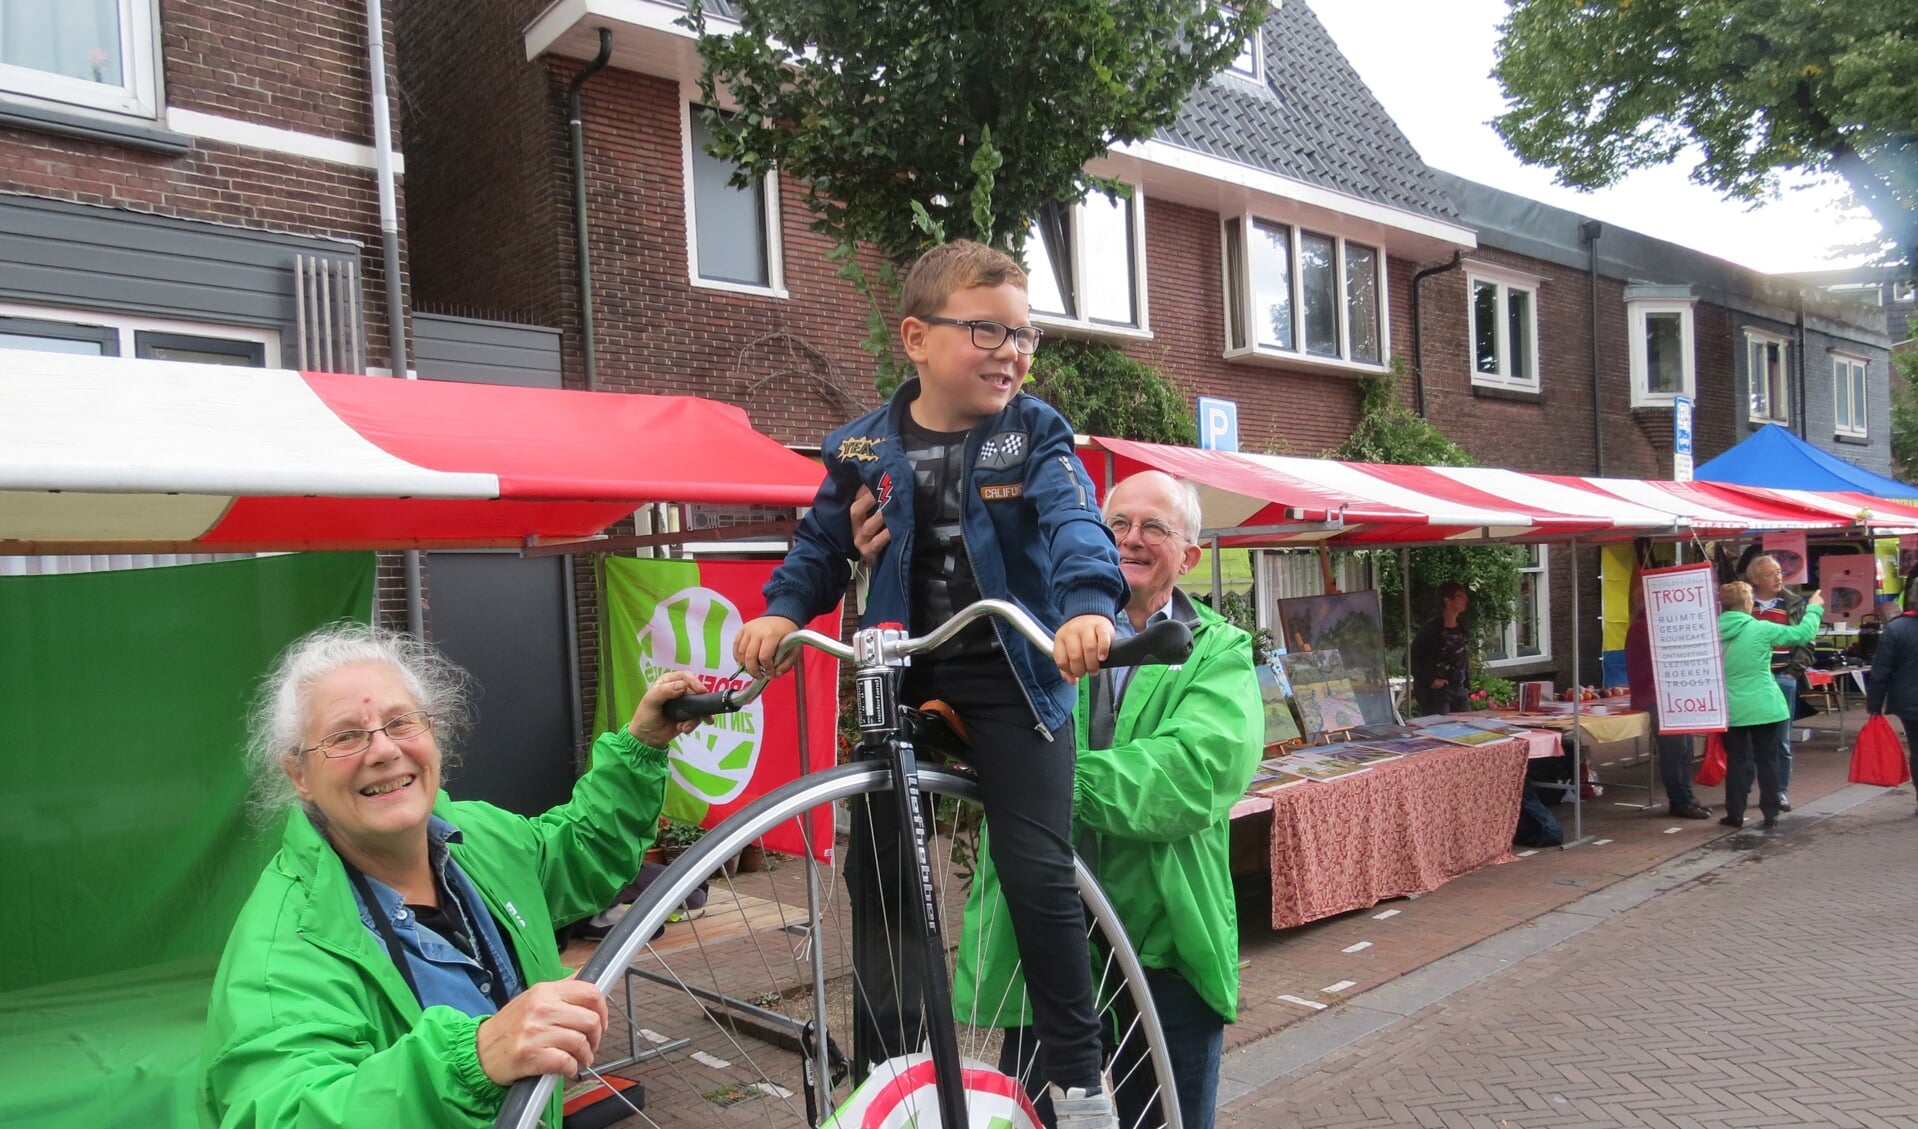 GroenLinks trekt aandacht met een fiets uit vroegere tijden.